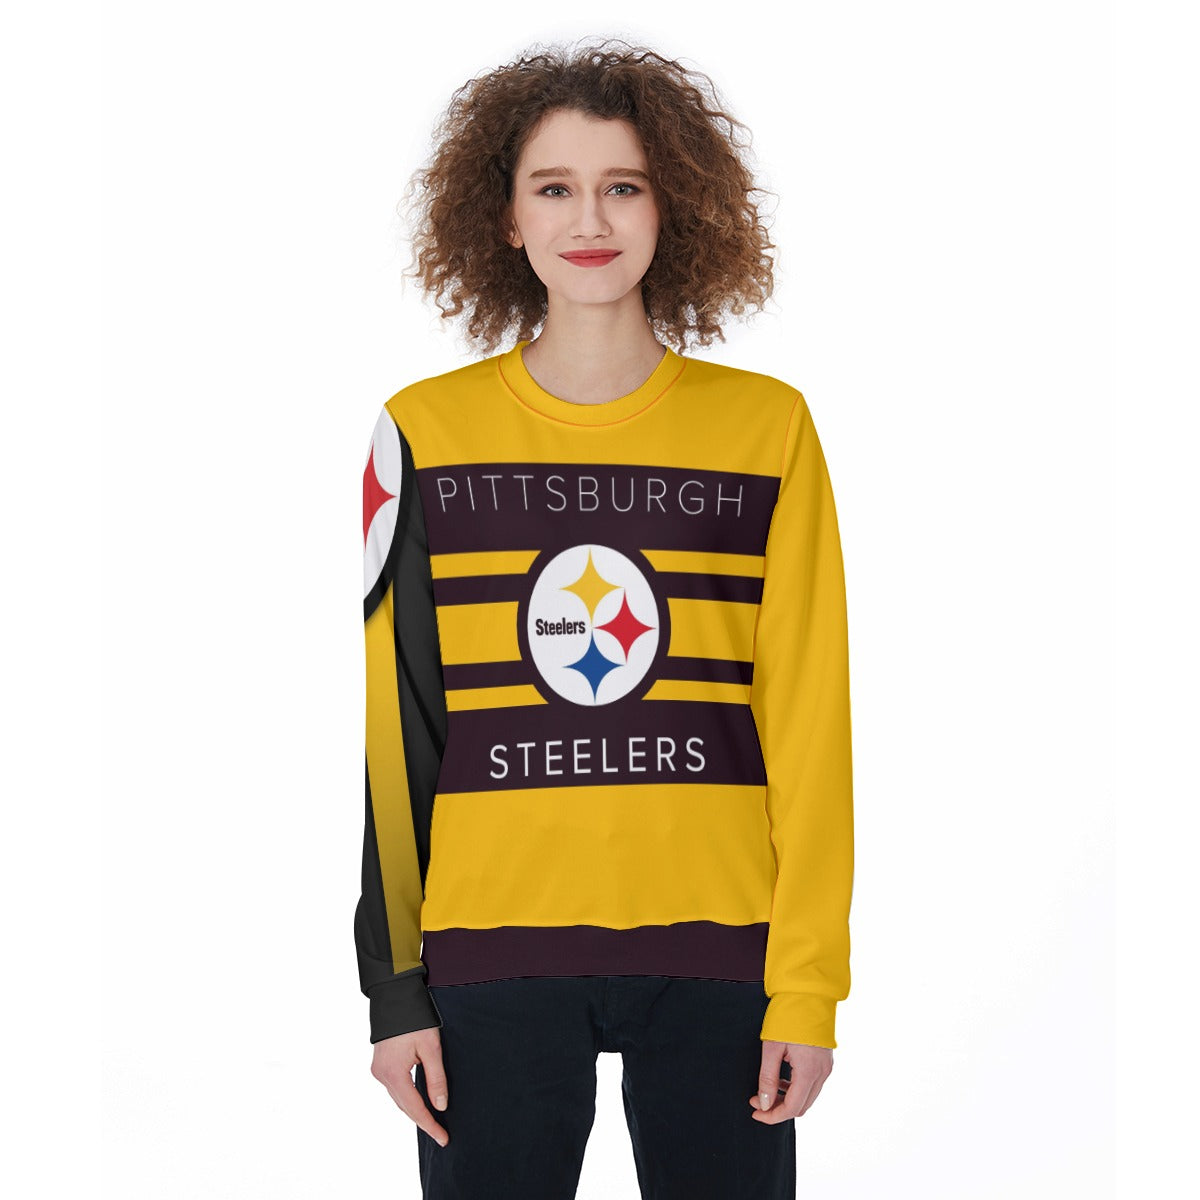 NFL Pittsburgh Steelers Womens Black Graphic Hoodie Sweatshirt Size Medium